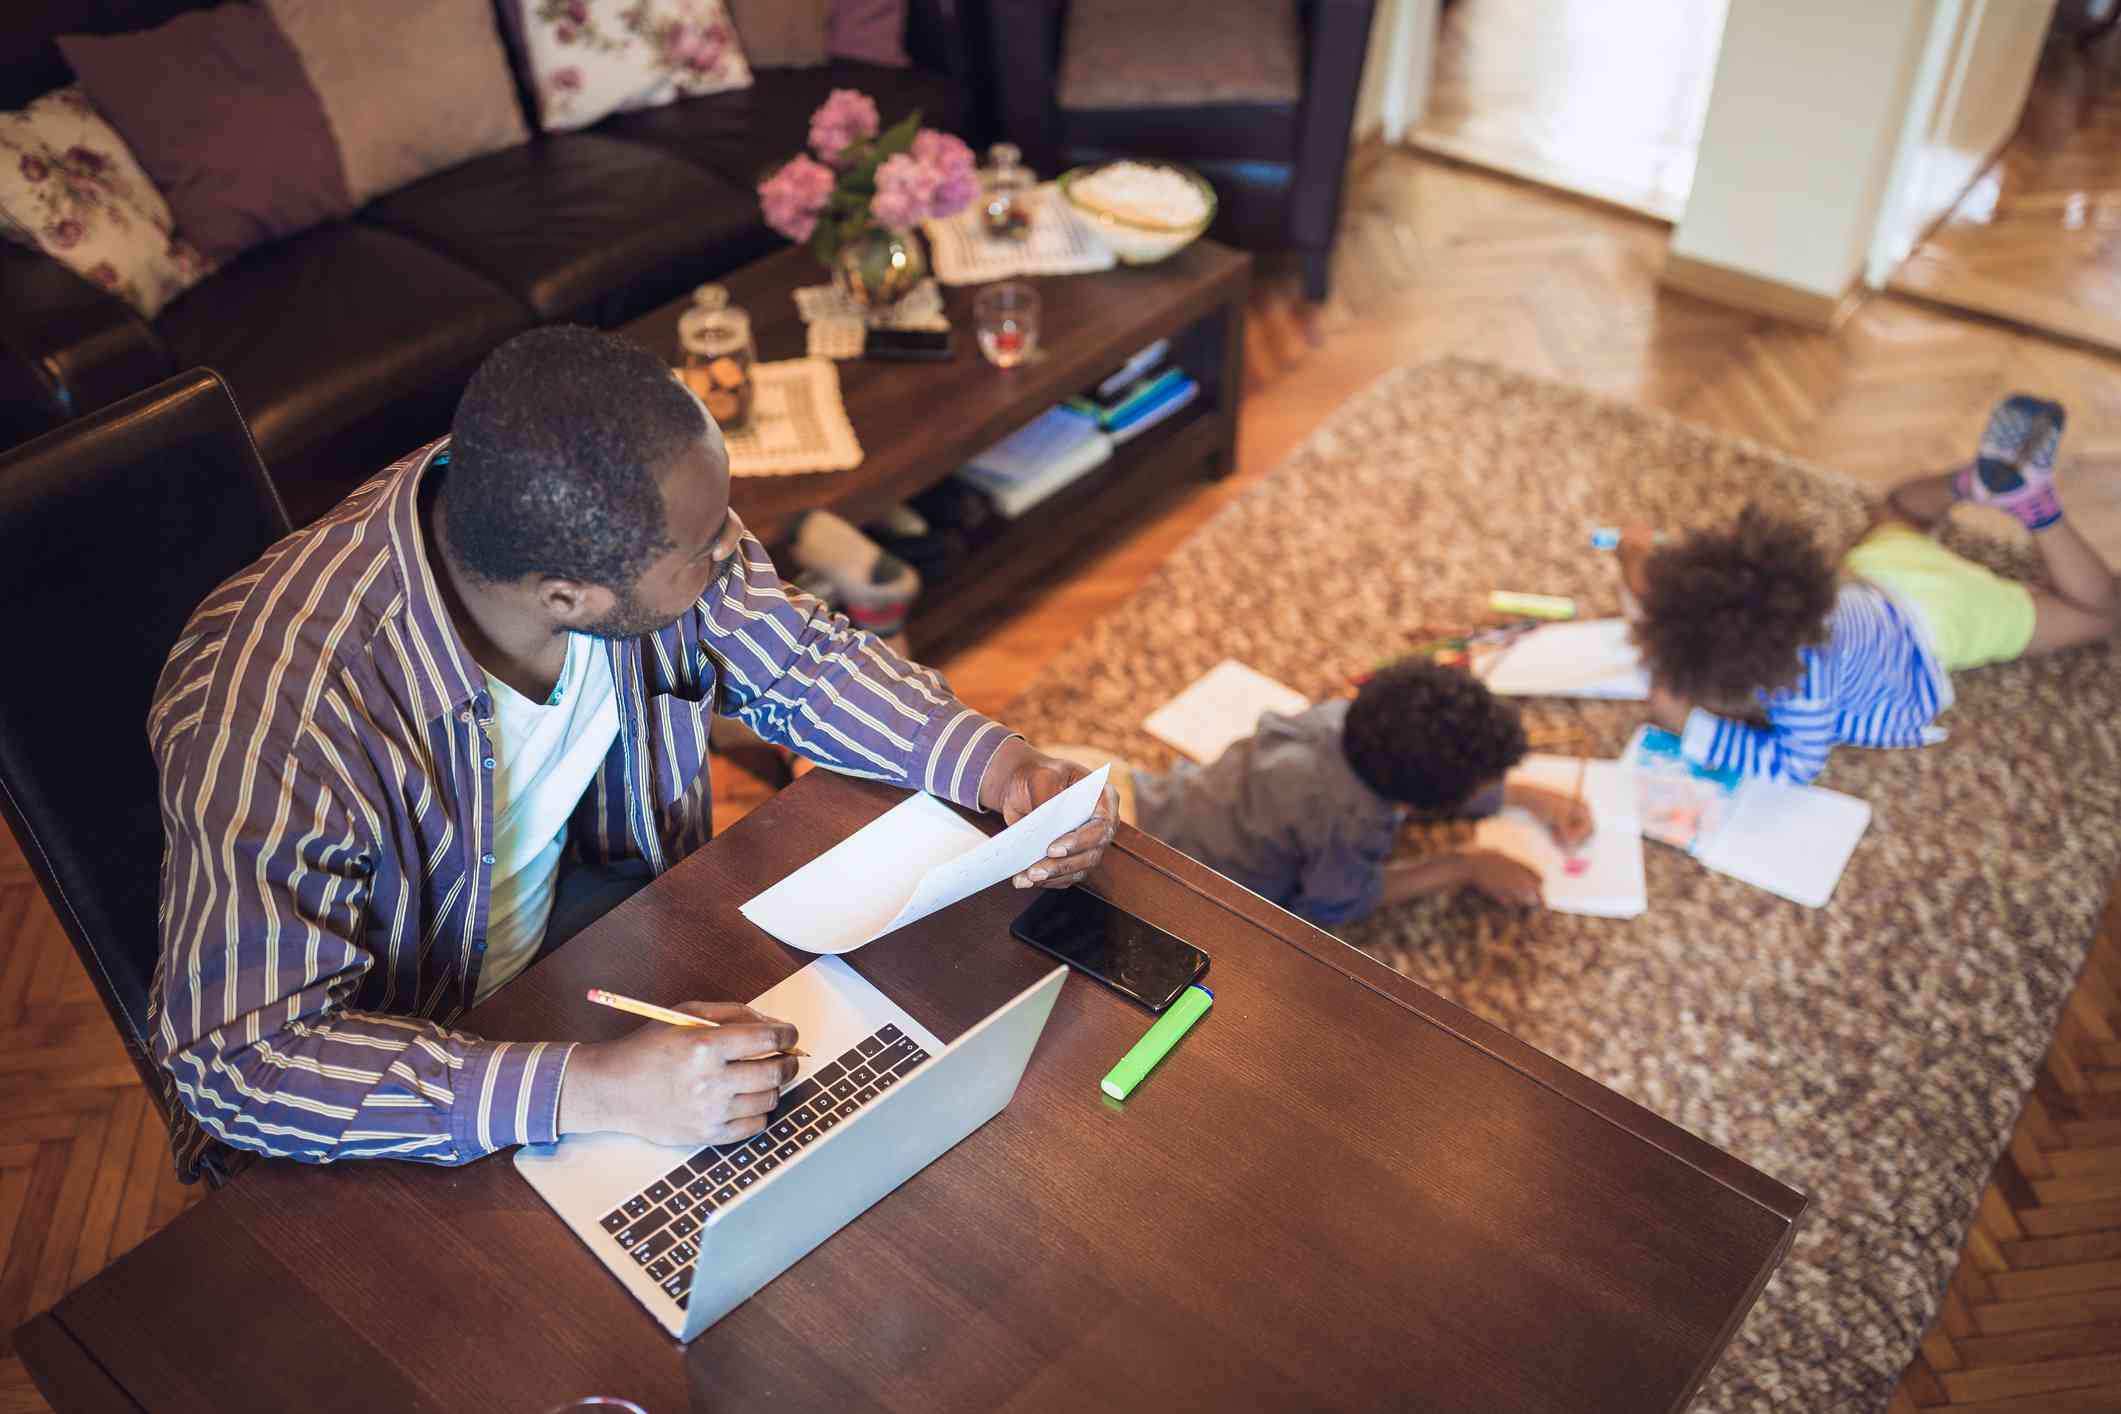 Otec pracuje z domova, zatímco jeho dvě děti si hrají v obývacím pokoji